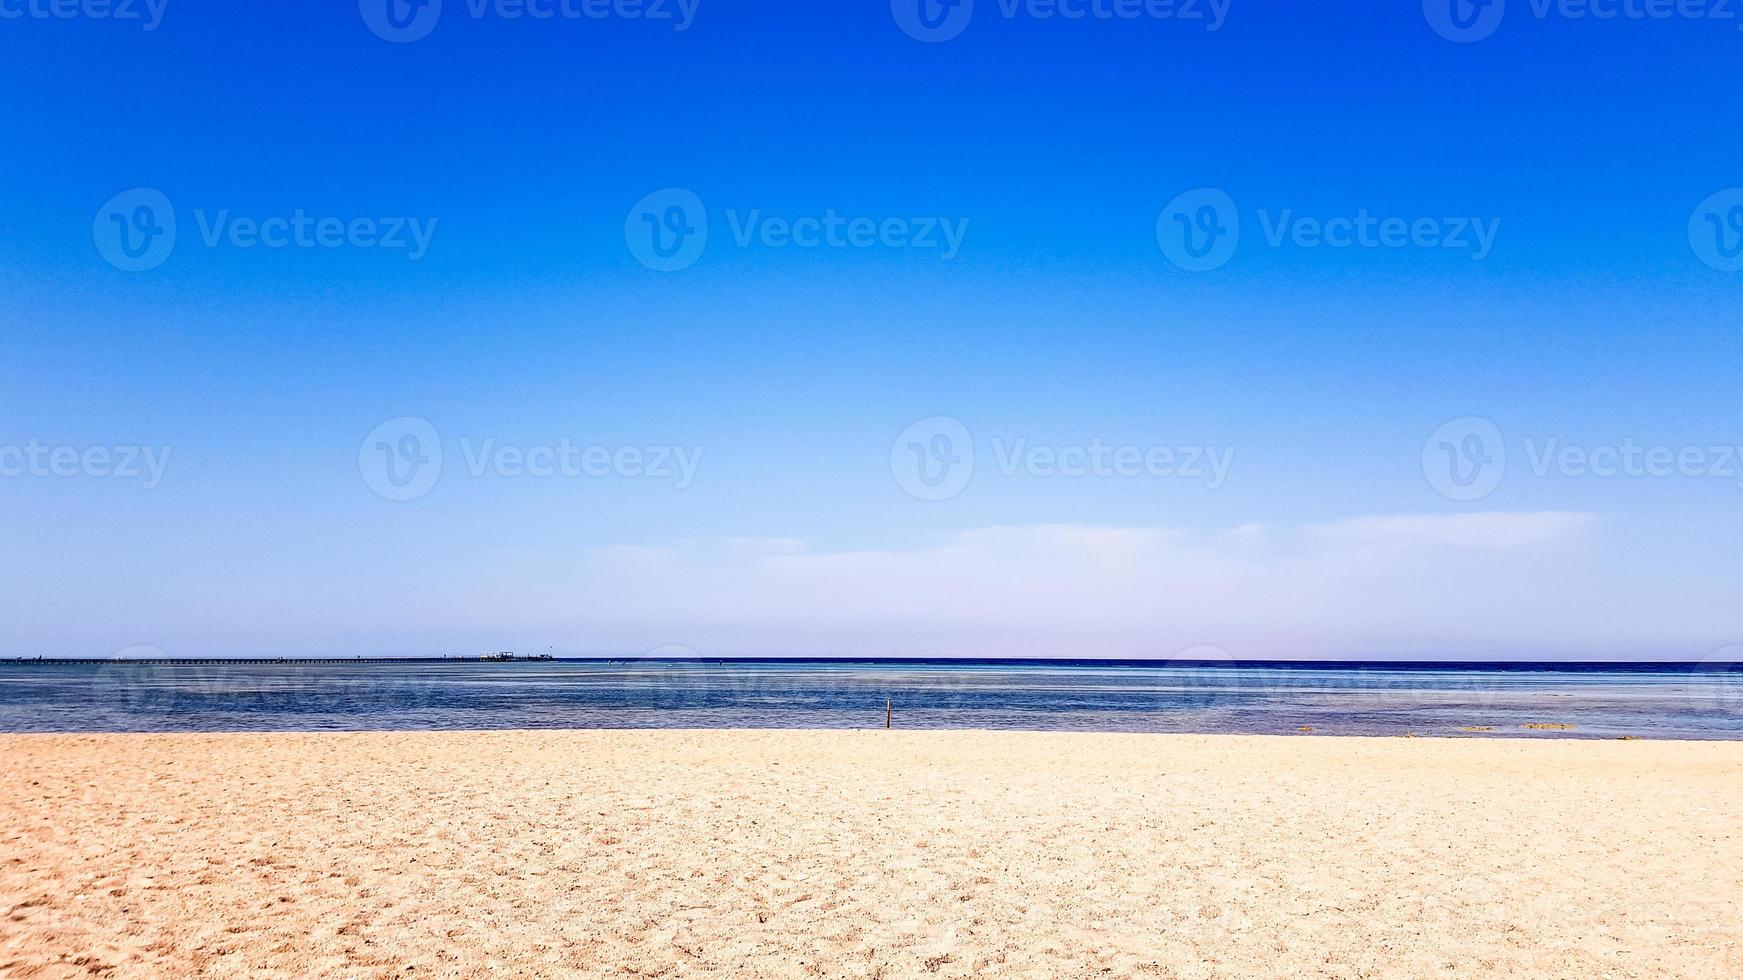 een prachtig zandstrand zonder mensen en een tropische blauwe zee met blauwe hemelachtergrond. foto